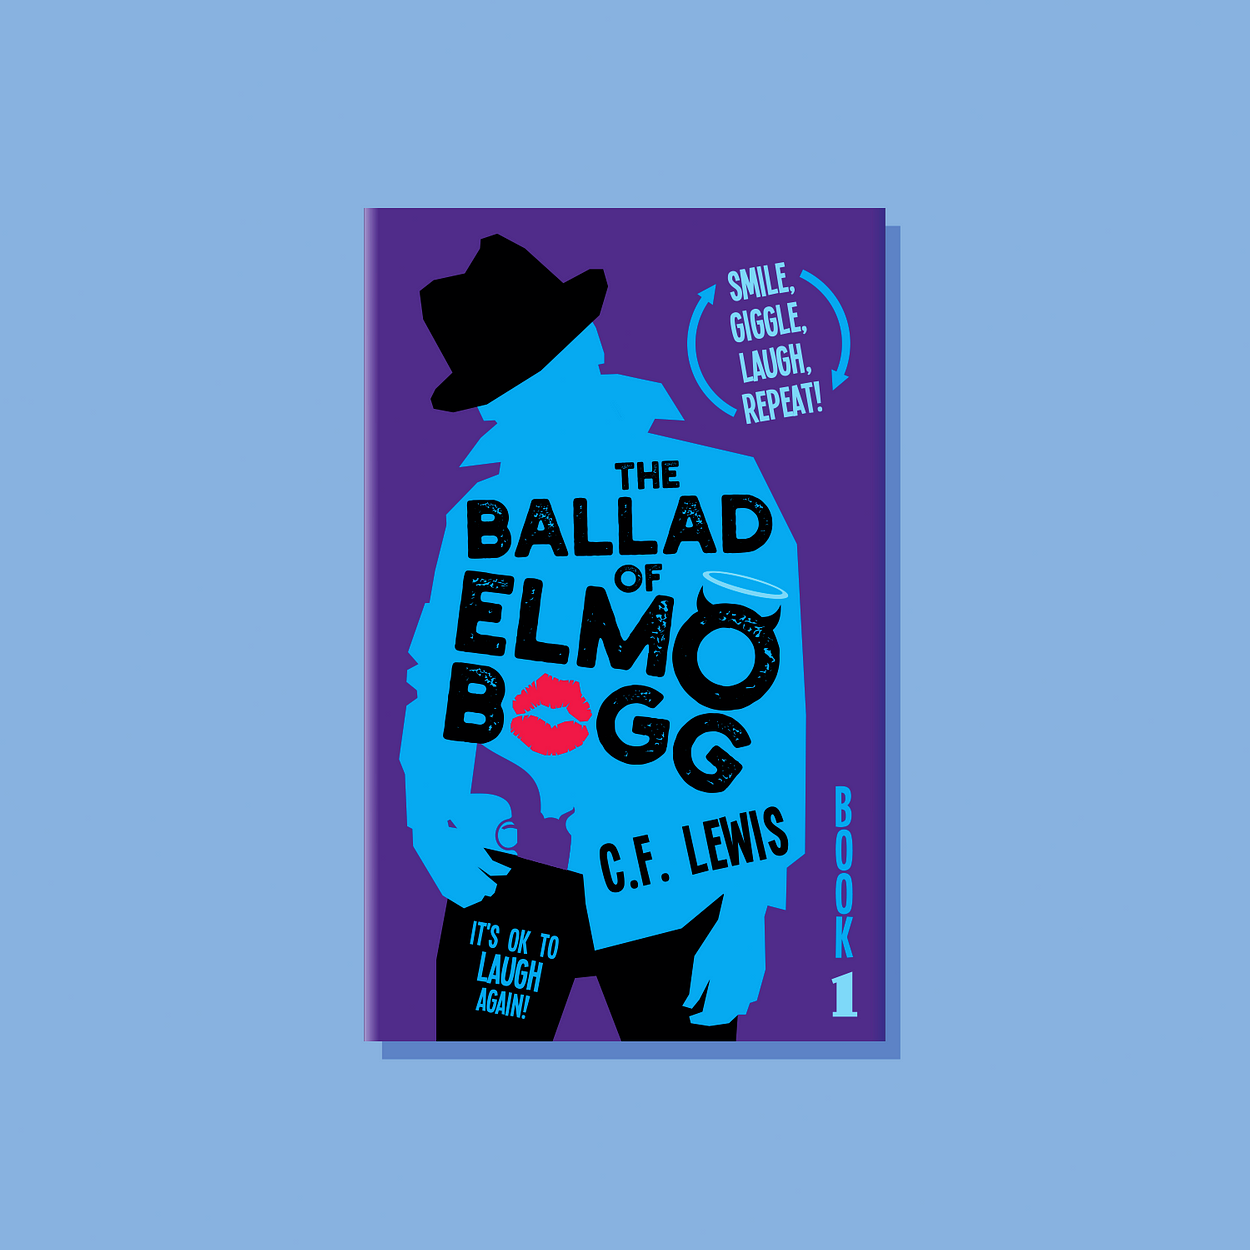 The Ballad Of Elmo Bogg